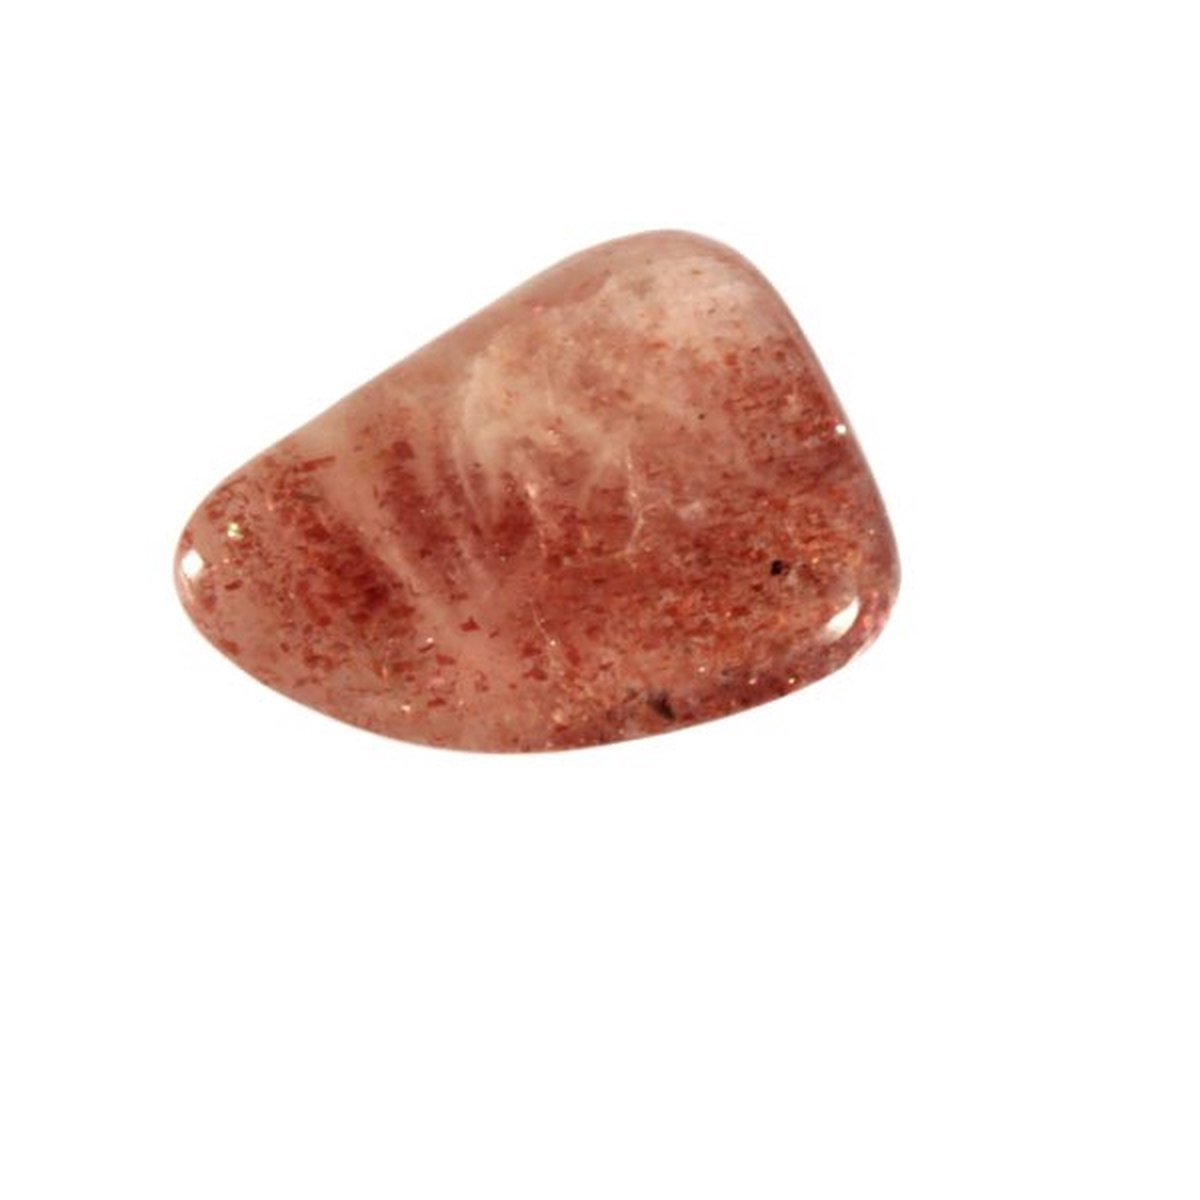 Zonnesteen steen A-kwaliteit getrommeld 5 - 10 gram